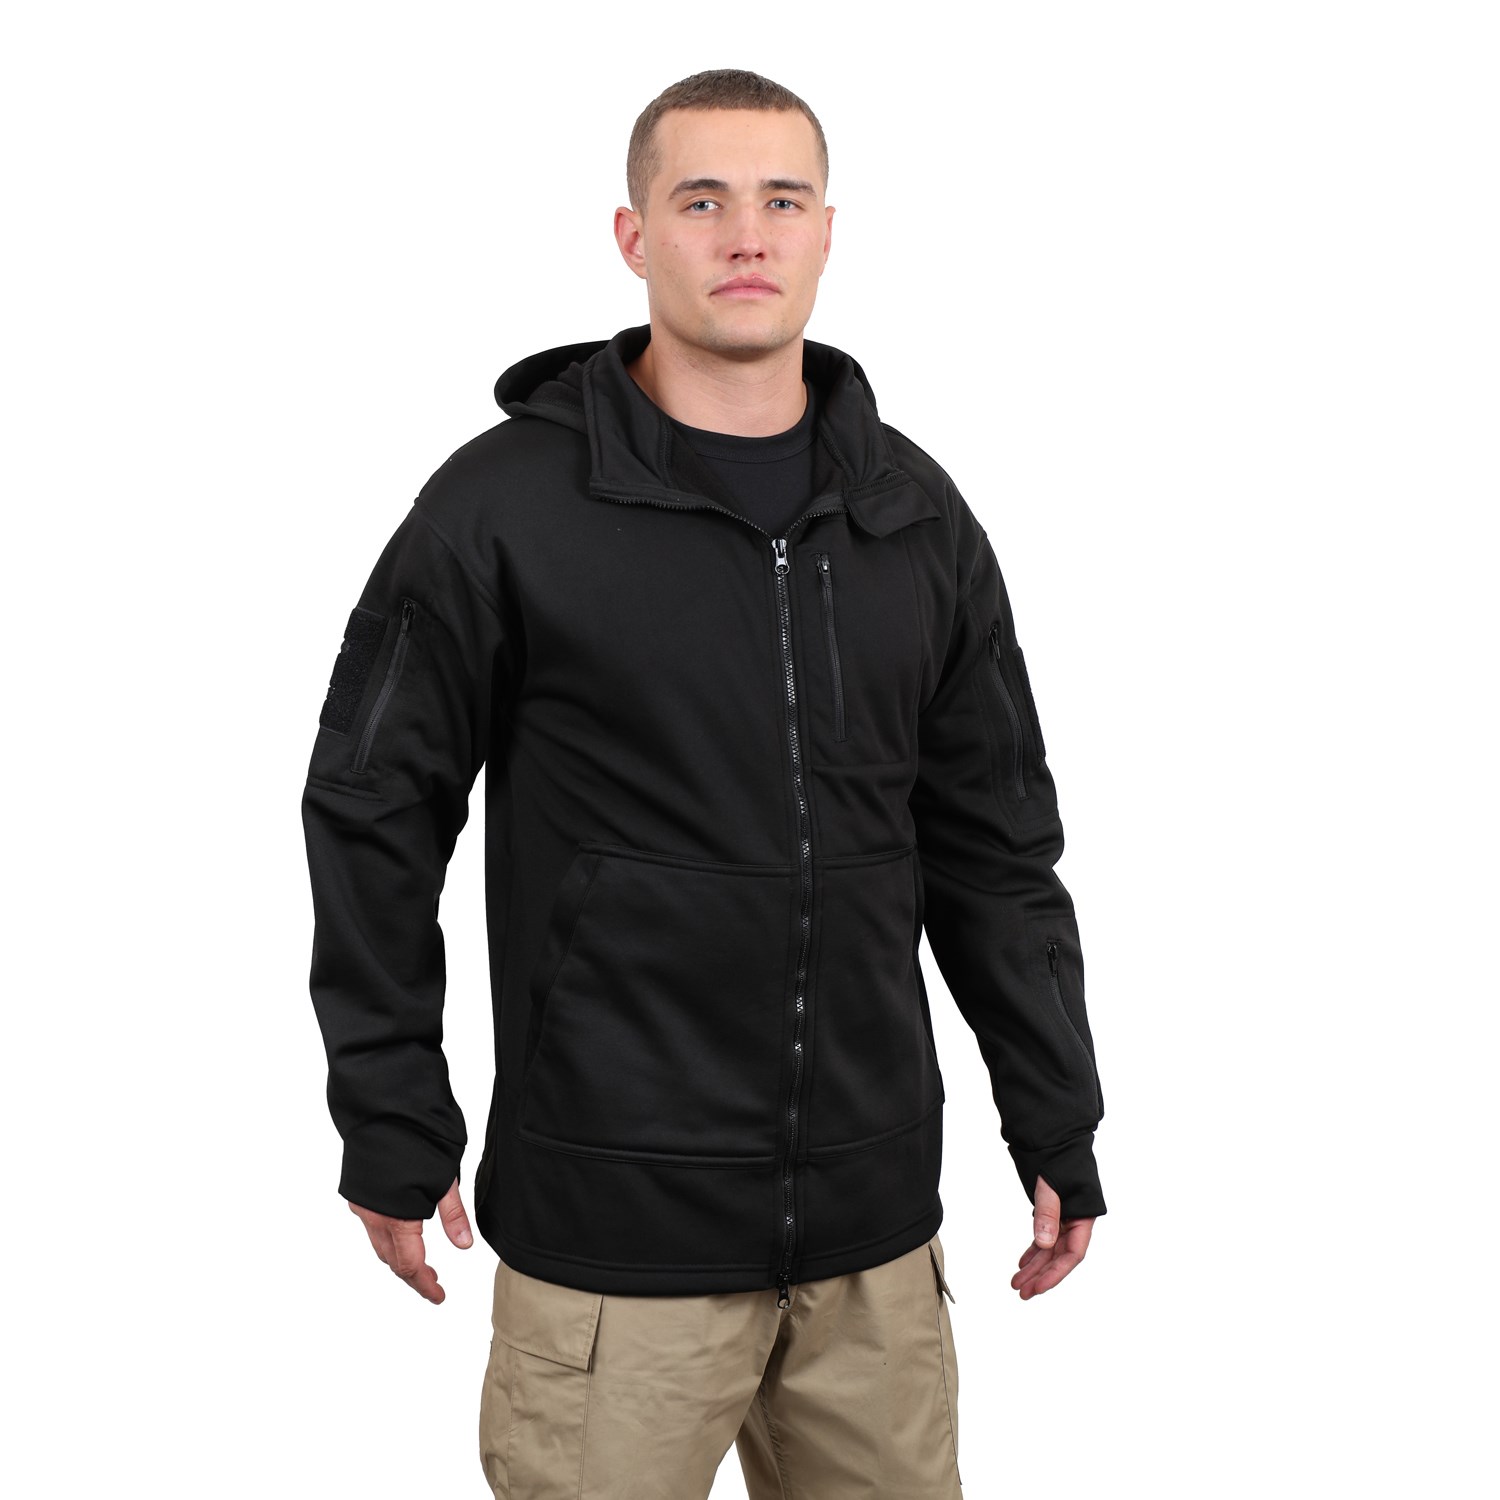 Jacket TACTICAL zip up BLACK ROTHCO 2507 L-11